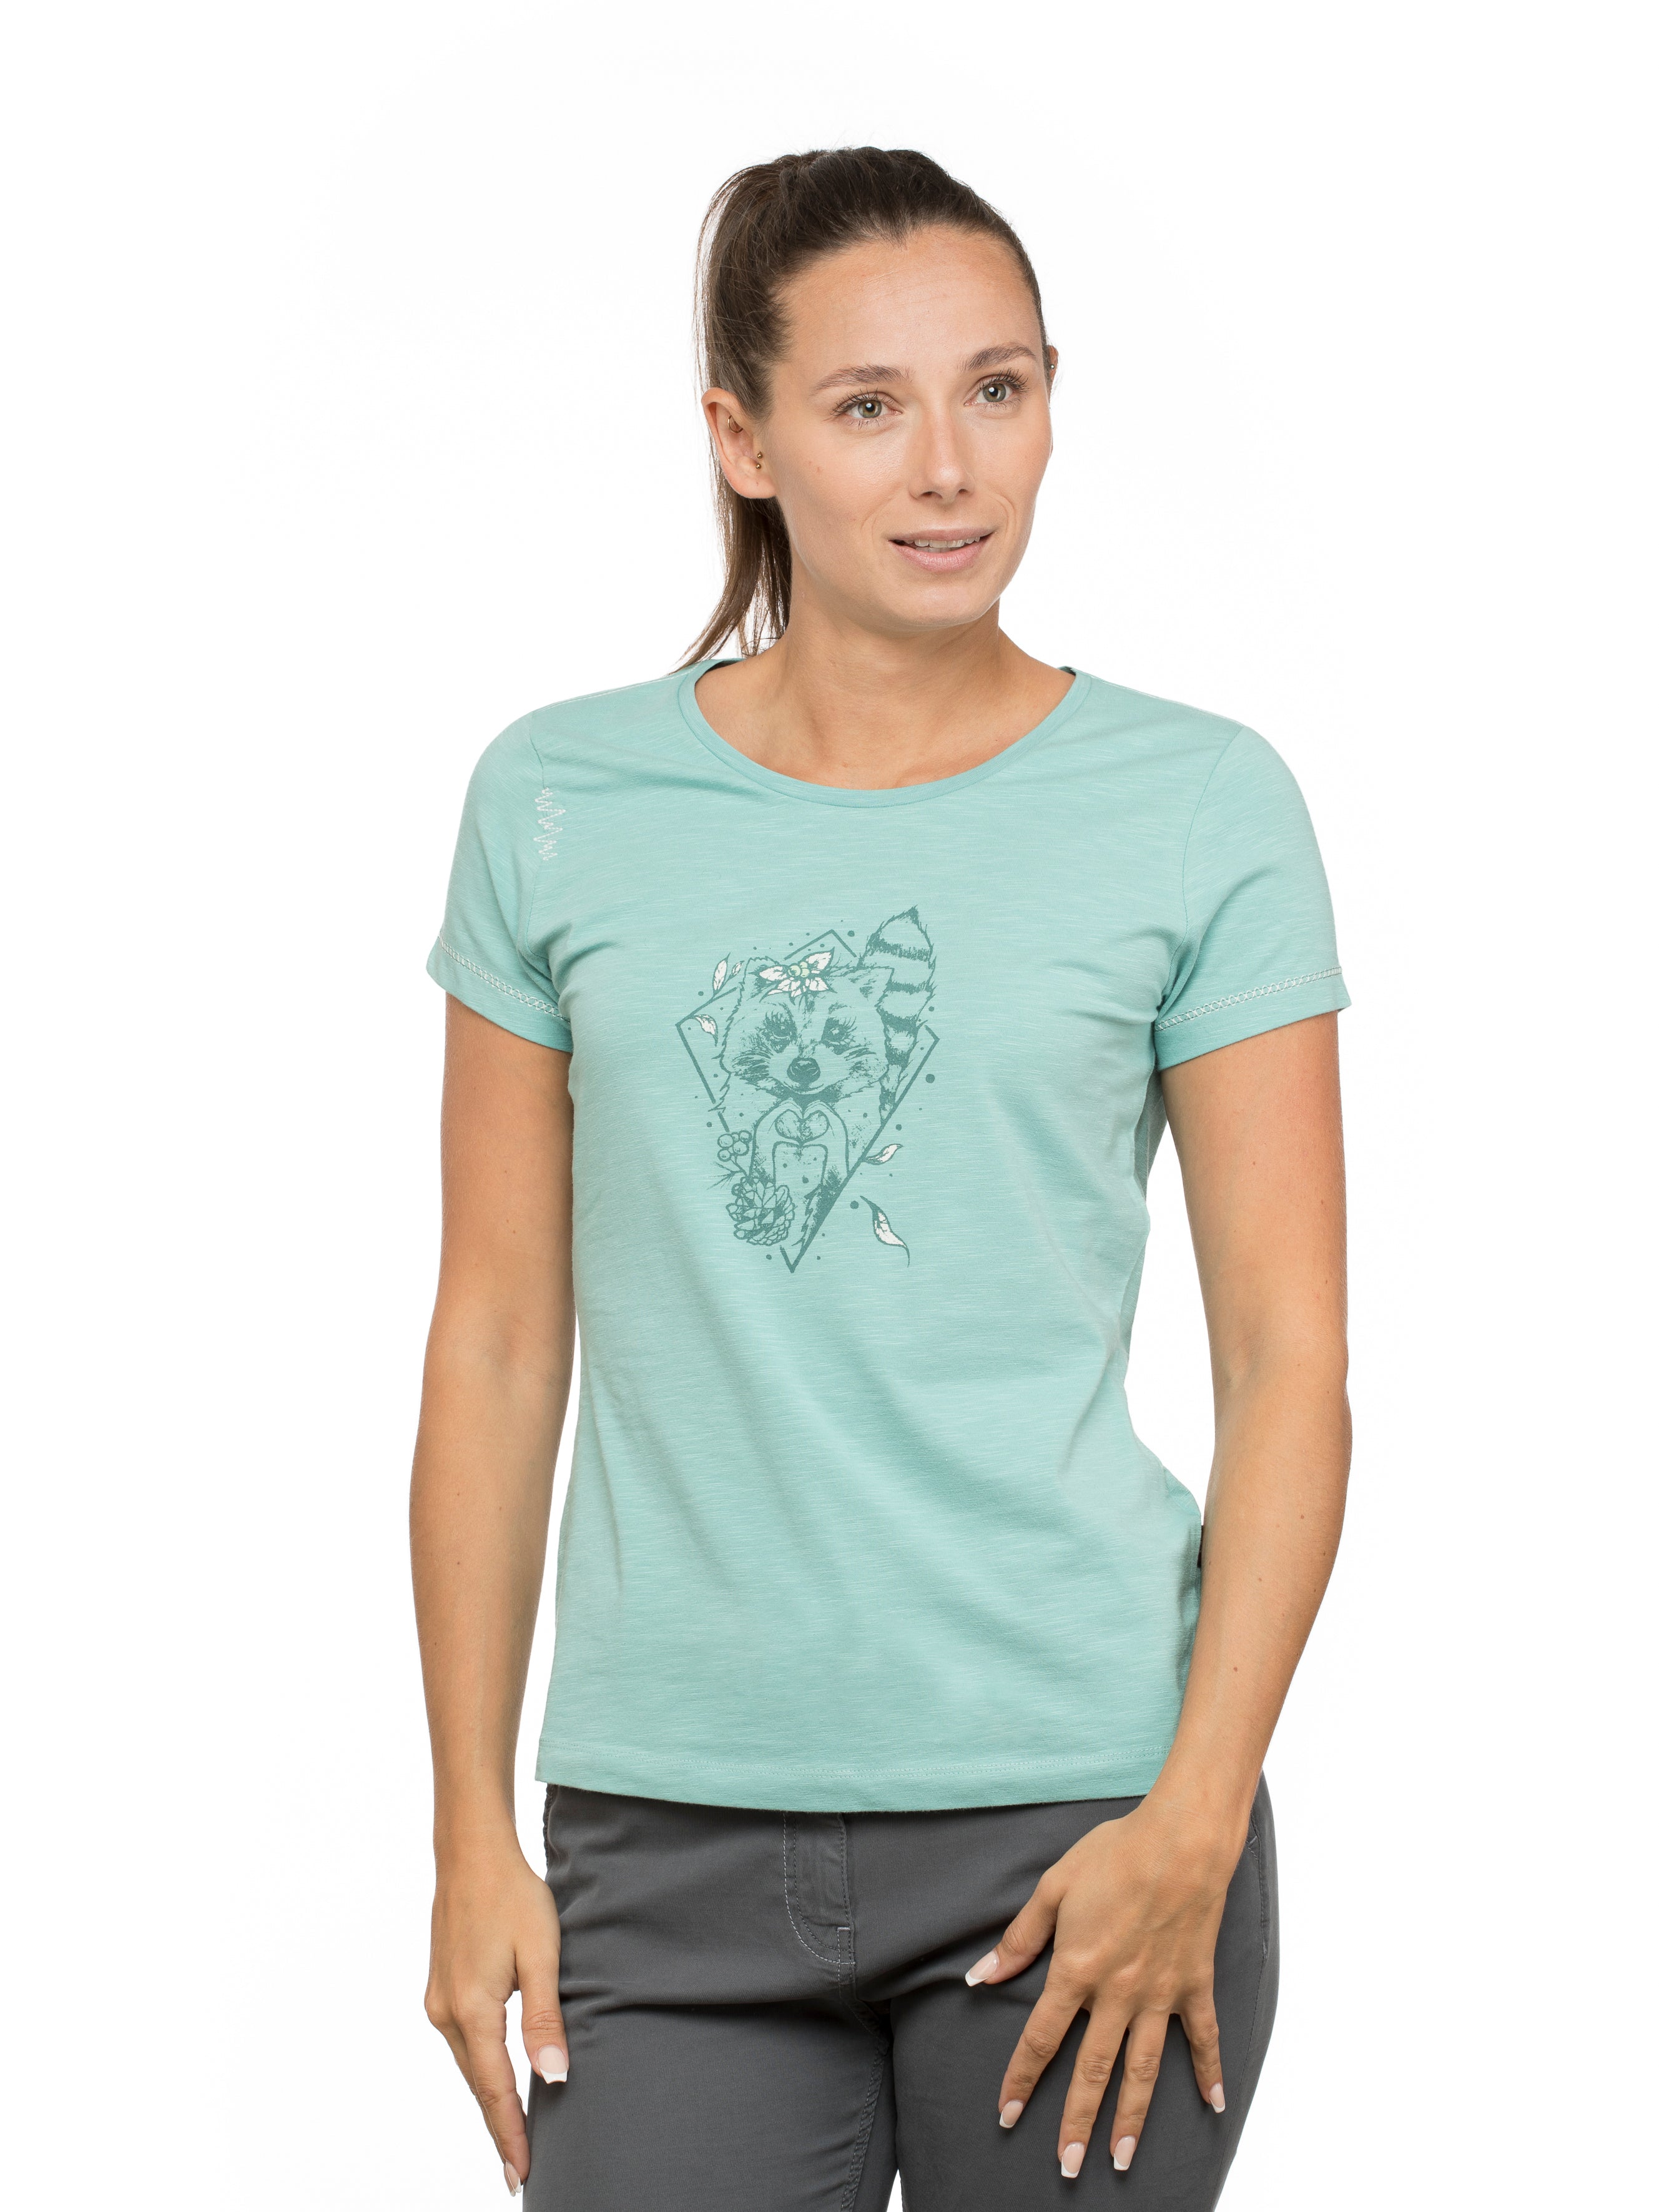 Chillaz Gandia Little Bear Heart Woman T-Shirt